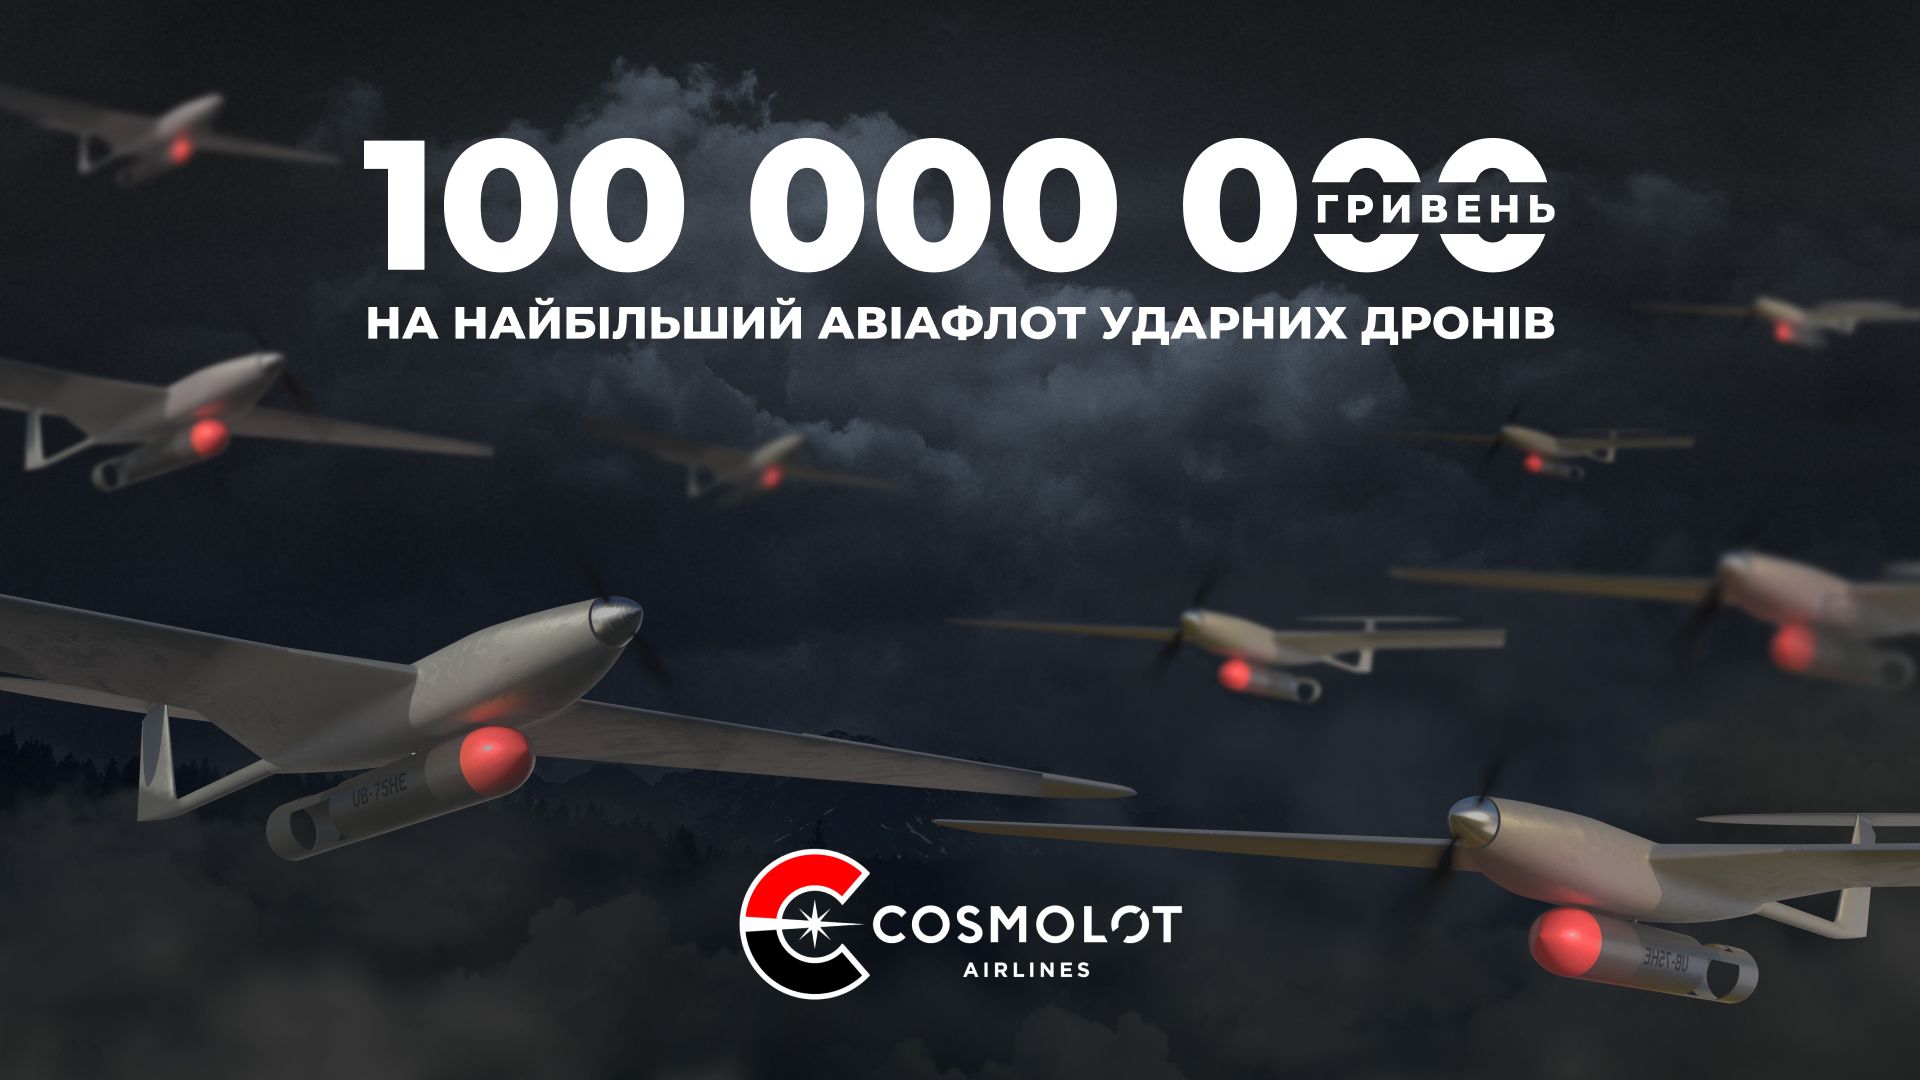 Cosmolot Airlines: 100 мільйонів гривень на найбільший авіафлот ударних дронів